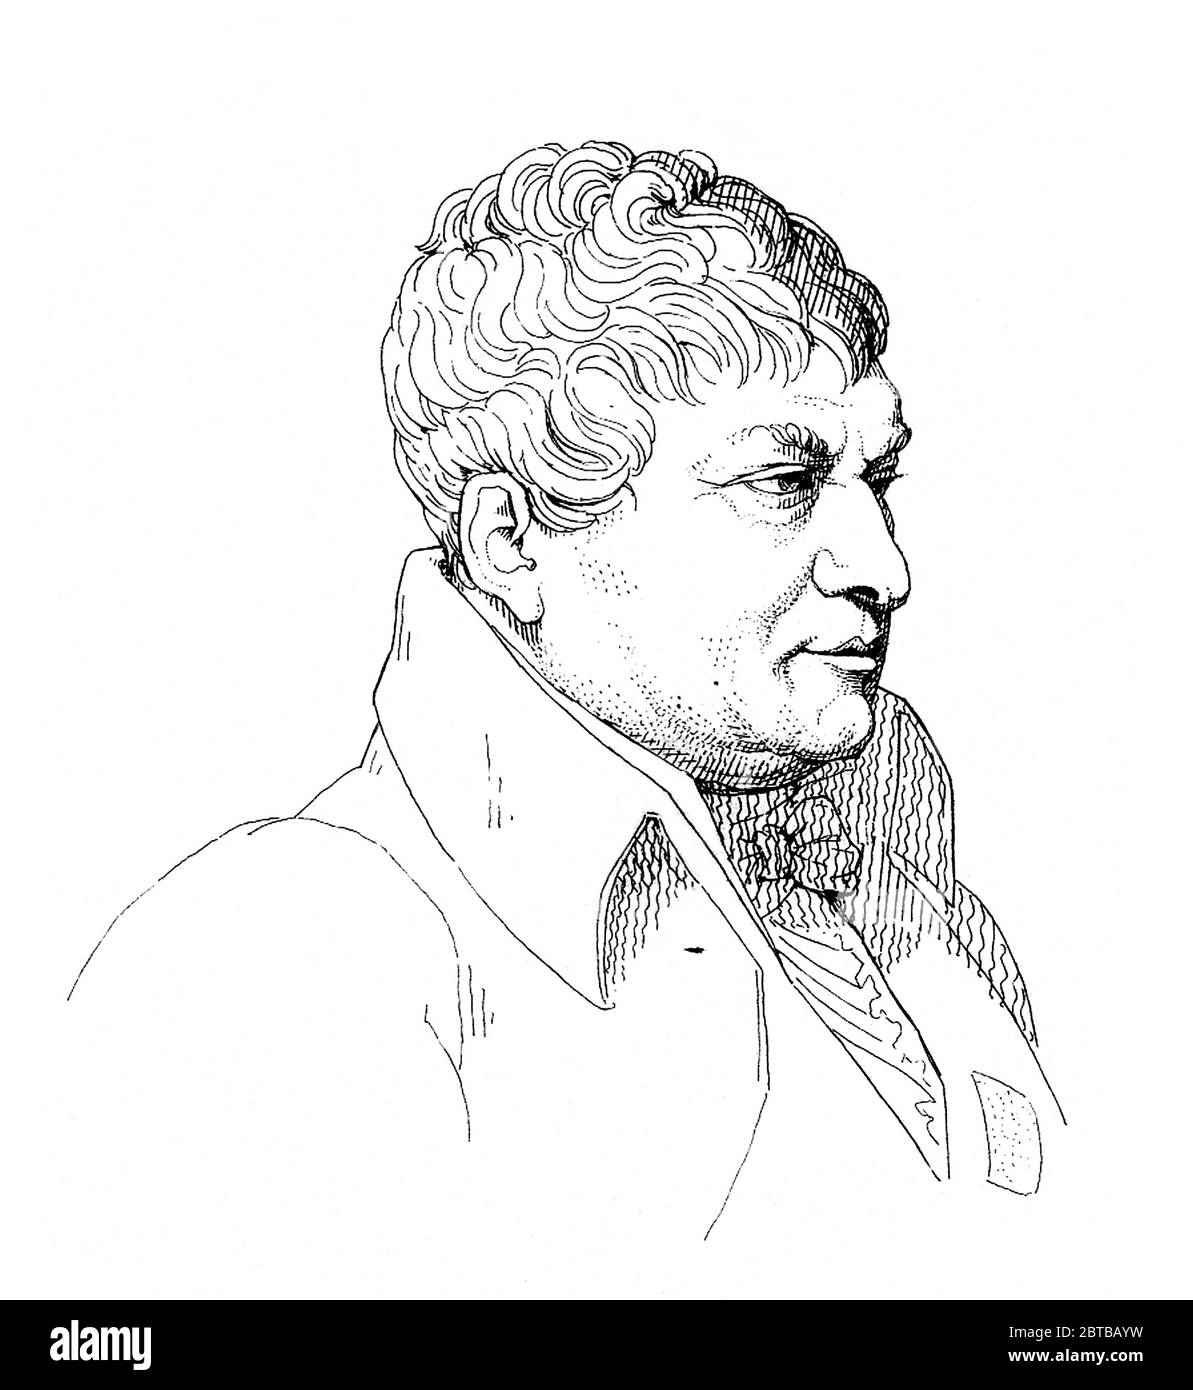 1821, FRANCE : The french mathematician and astronomer Jean-Baptiste Joseph Delambre ( 1749 - 1822 ) . Engraving by unknown. .- Jean Baptiste - SCIENZA - ritratto - portrait - SCIENZIATO - SCIENZA -  SCIENCE - SCIENTIST- HISTORY -  foto storiche  - MATEMATICO - MATEMATICA - MATHEMATIC - MATHEMATICIAN  - mathematics - ASTRONOMIA - ASTRONOMY - ASTRONOMER - ASTRONOMO -  illustrazione - illustration - engraving - incisione  - colletto - collar - engraving --- ARCHIVIO GBB Stock Photo